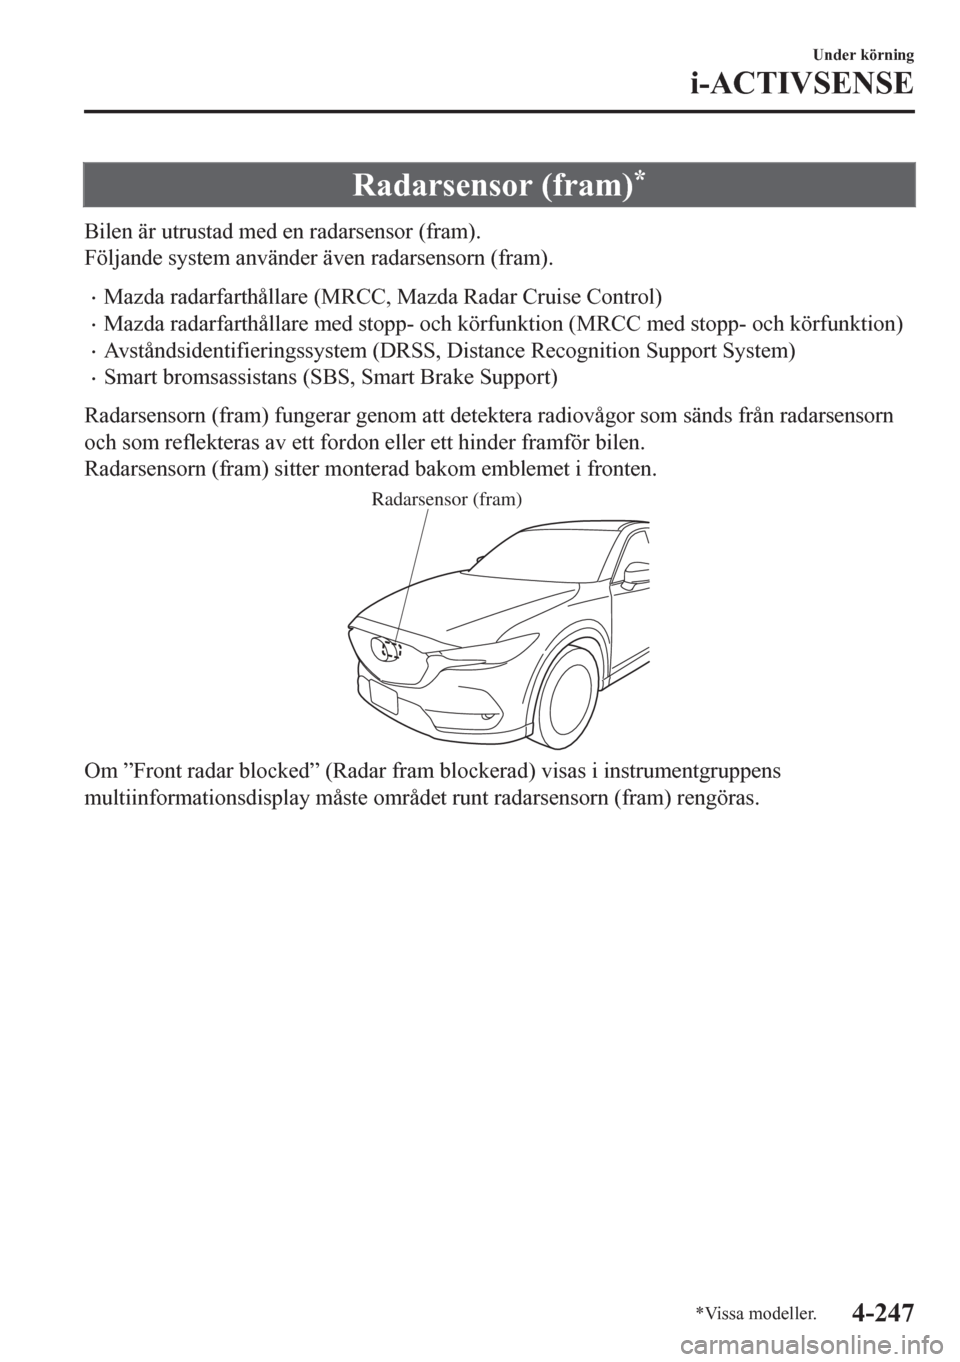 MAZDA MODEL CX-5 2018  Ägarmanual (in Swedish) Radarsensor (fram)*
Bilen är utrustad med en radarsensor (fram).
Följande system använder även radarsensorn (fram).
•Mazda radarfarthållare (MRCC, Mazda Radar Cruise Control)
•Mazda radarfart